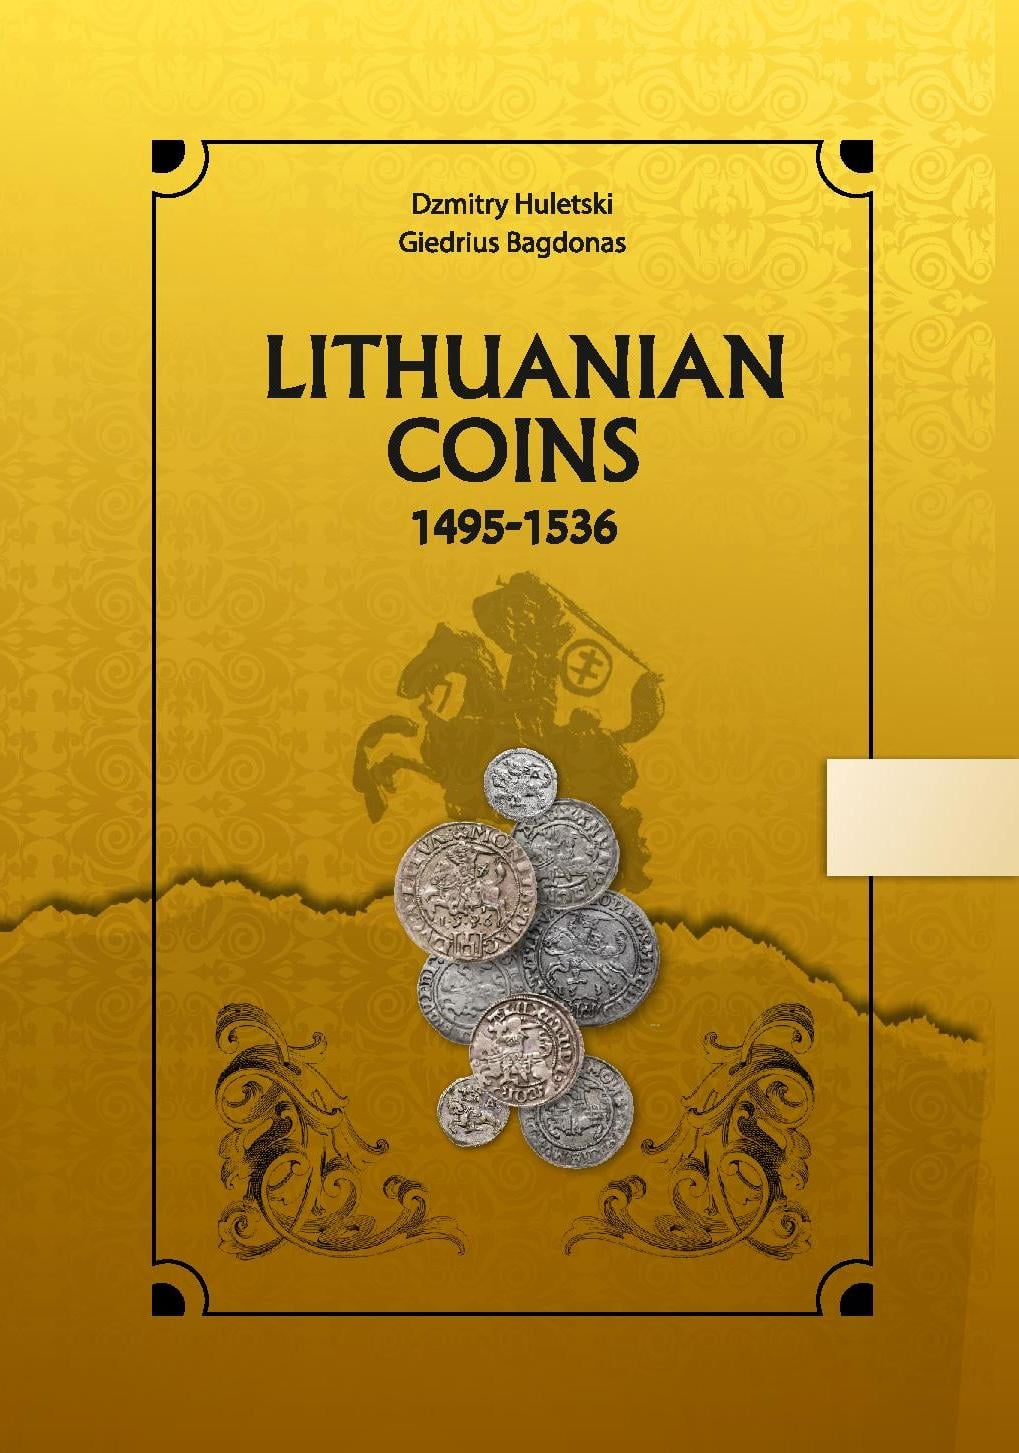 Lithuanian Coins 1495-1536 - Dzmitry Huletski, Giedrius Bagdonas.jpg